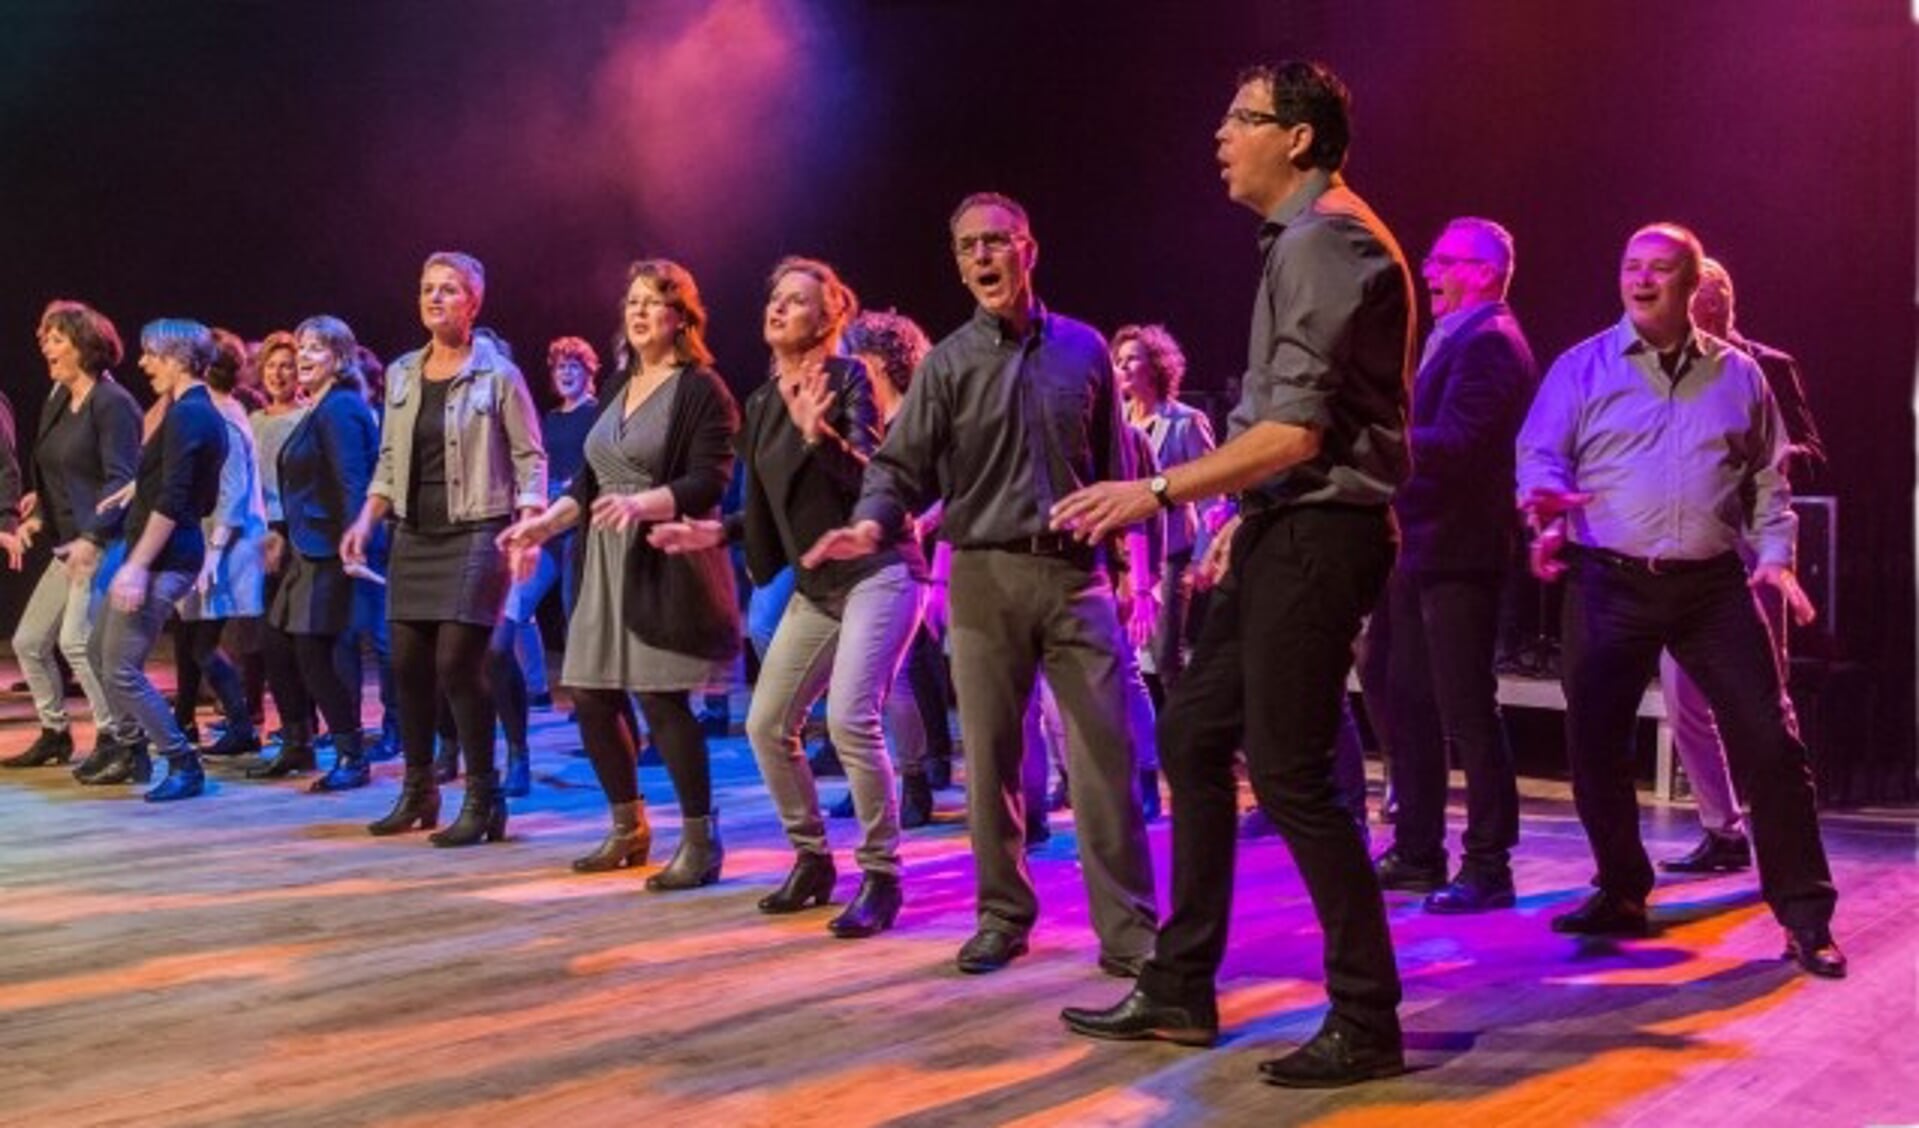 In 2019 werd Spirit uitgeroepen tot beste koor van Zuid Nederland. En nu zingen zij in Berkel. (Foto: PR)